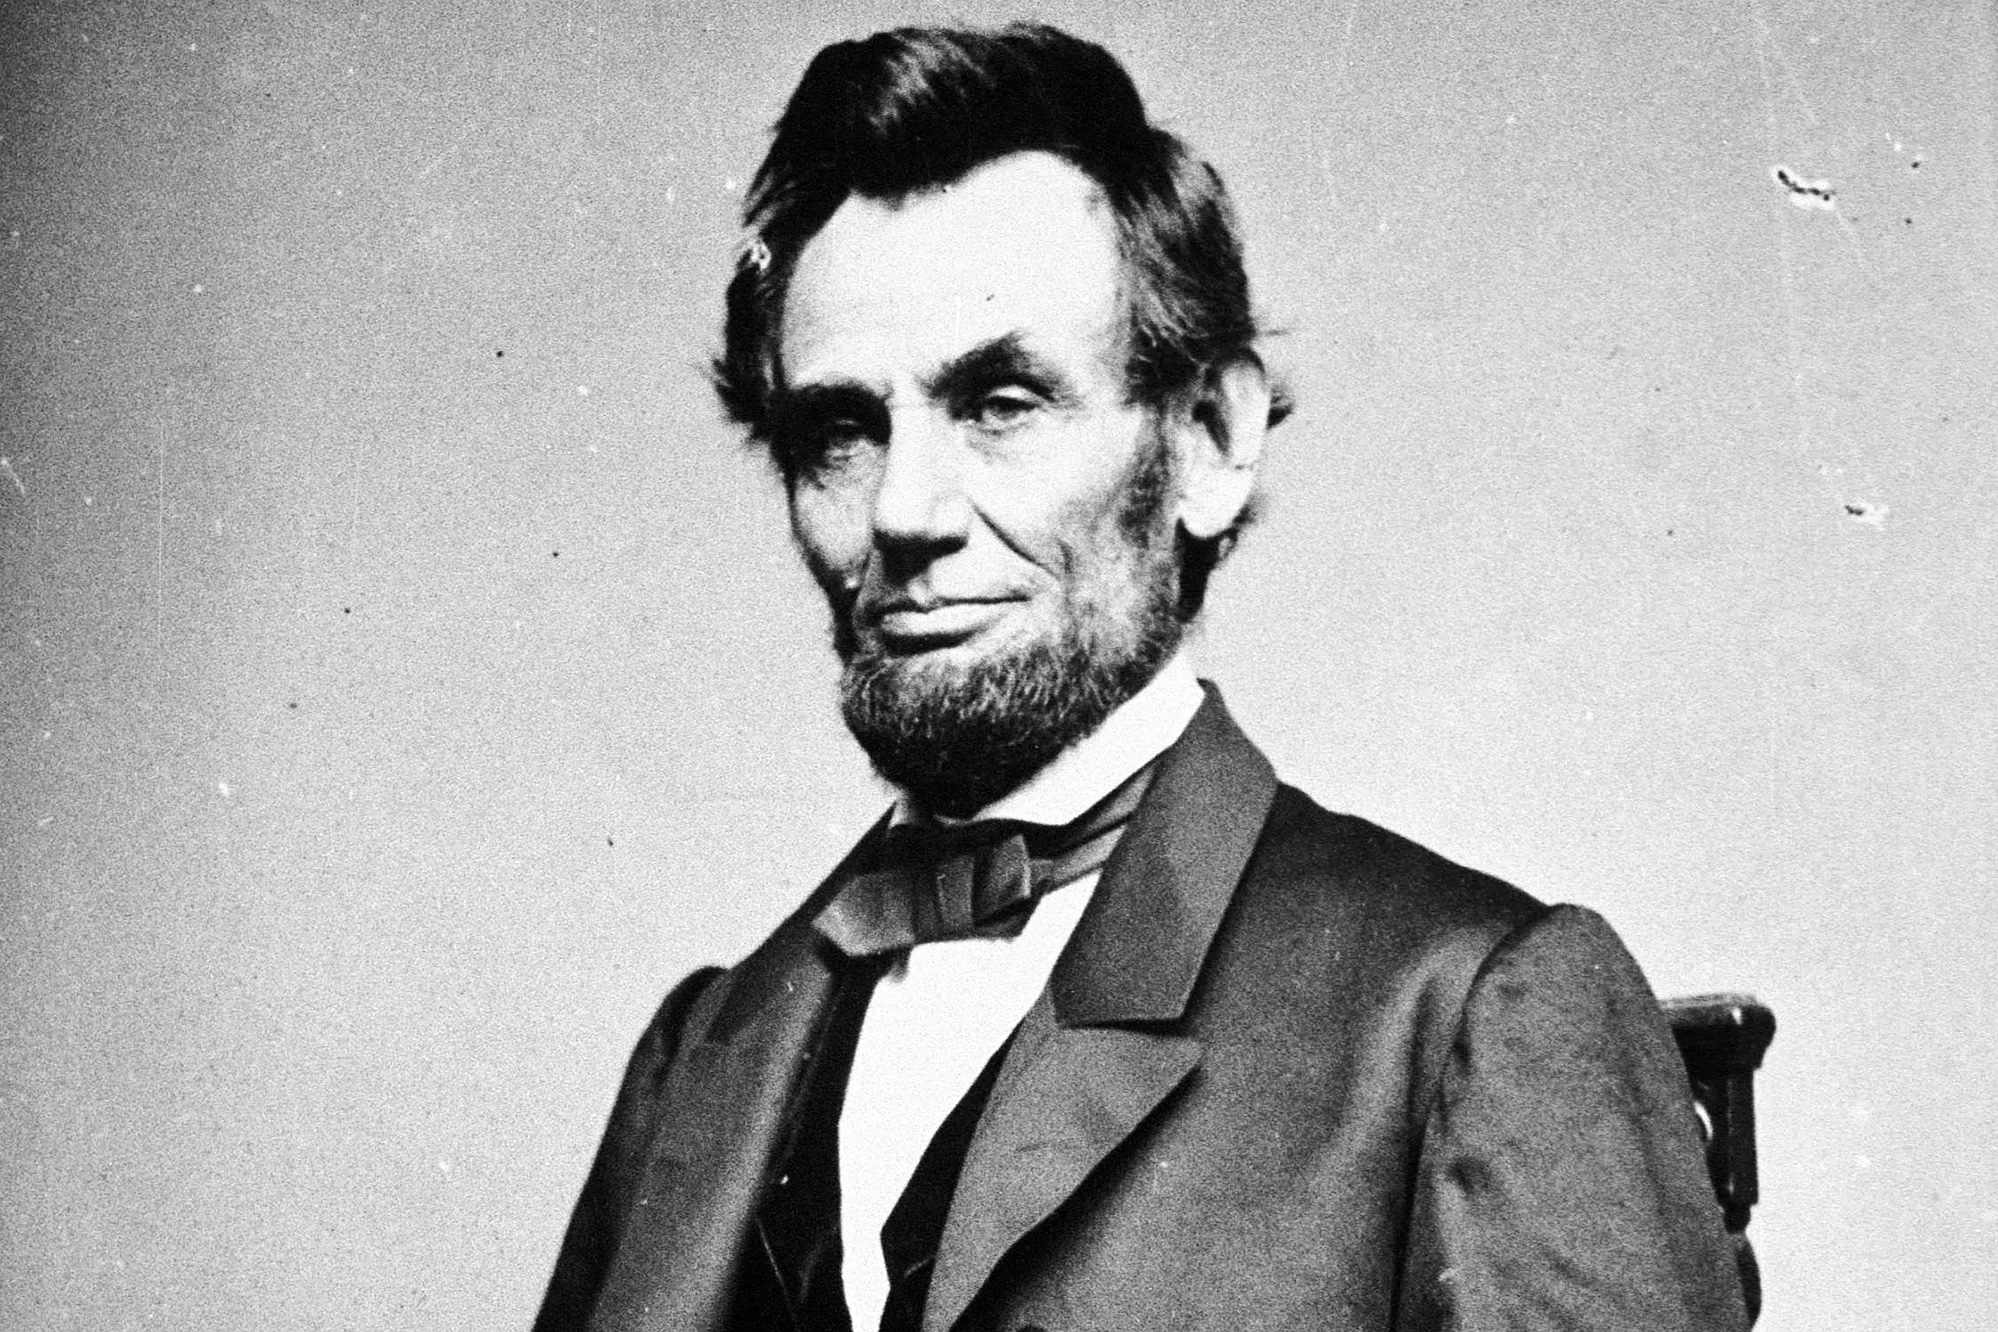 review hai cuốn sách nói về Tổng thống Lincoln, về nước Mỹ thời kỳ nô lệ